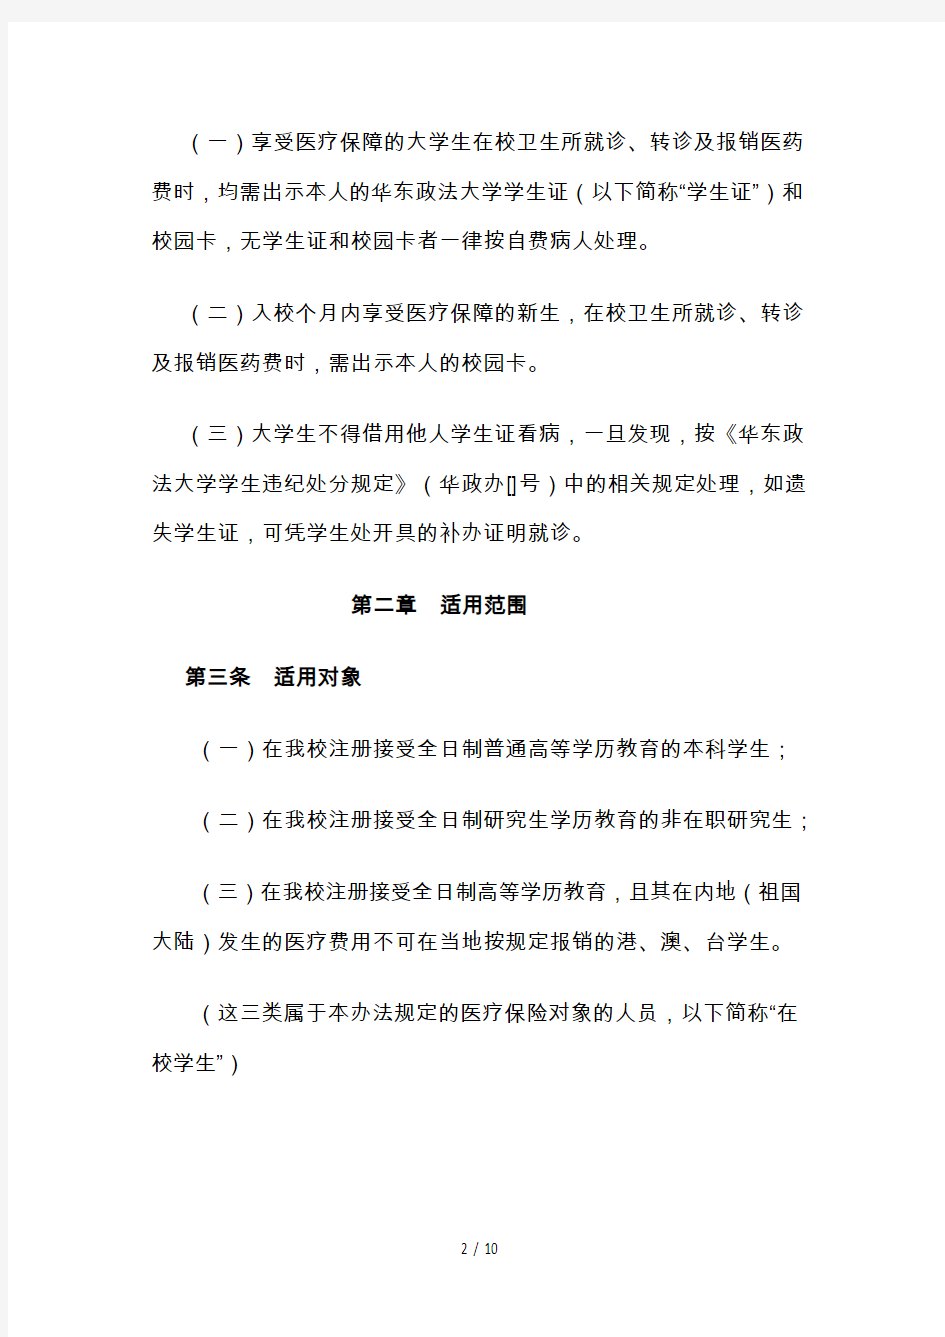 华东政法大学在校学生纳入本市城镇居民基本医疗保险暂行办法